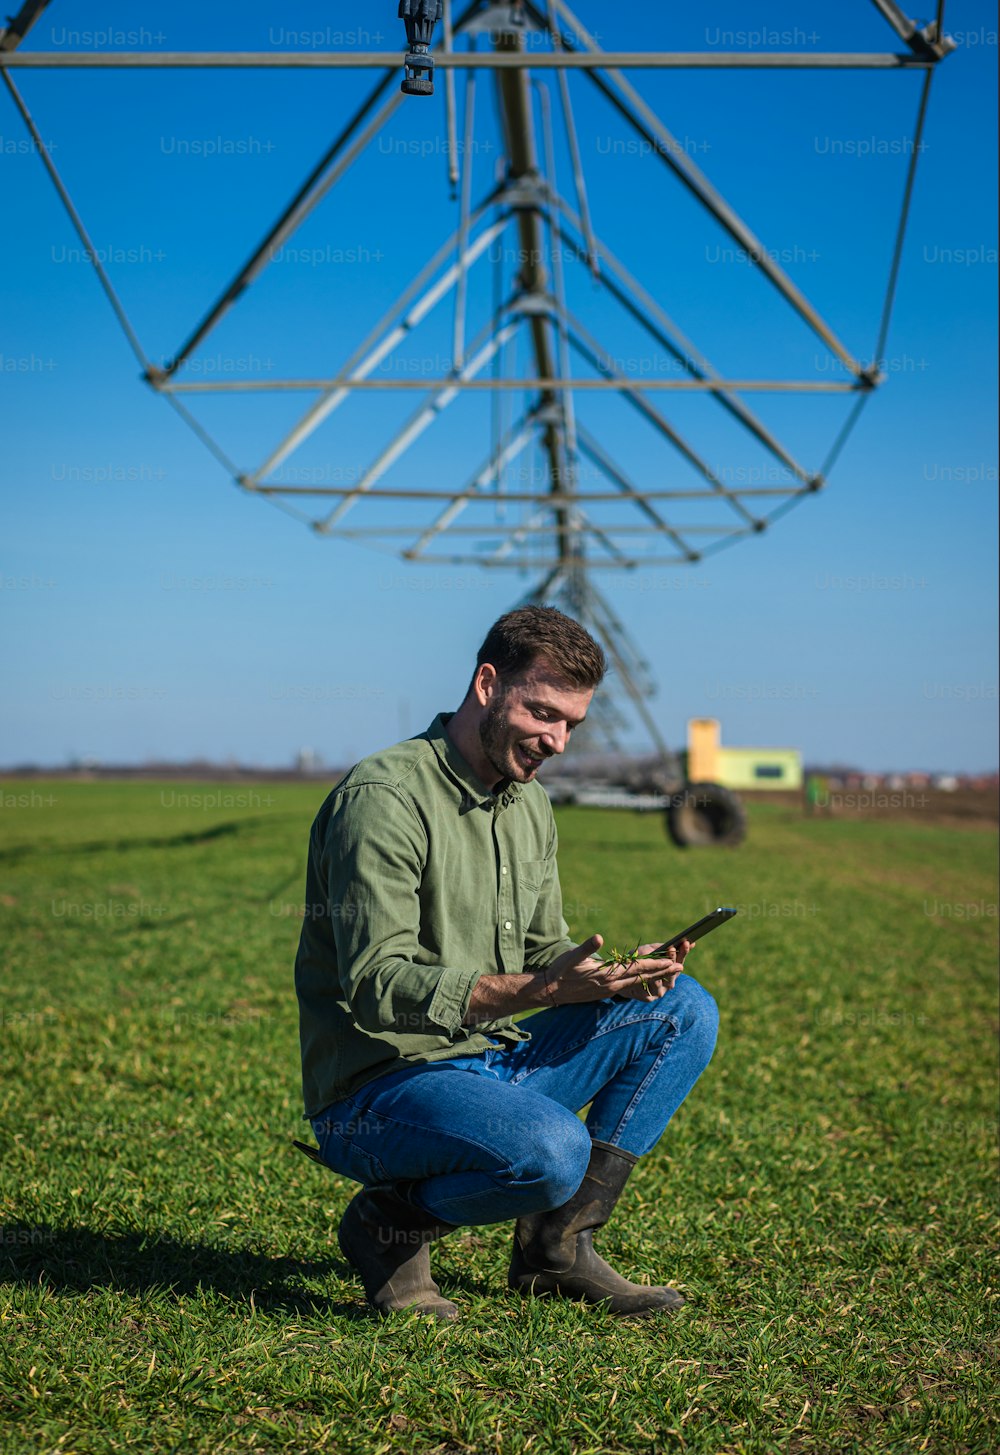 젊은 농부는 밀밭에 서서 태블릿에 관개 시스템을 설치합니다.